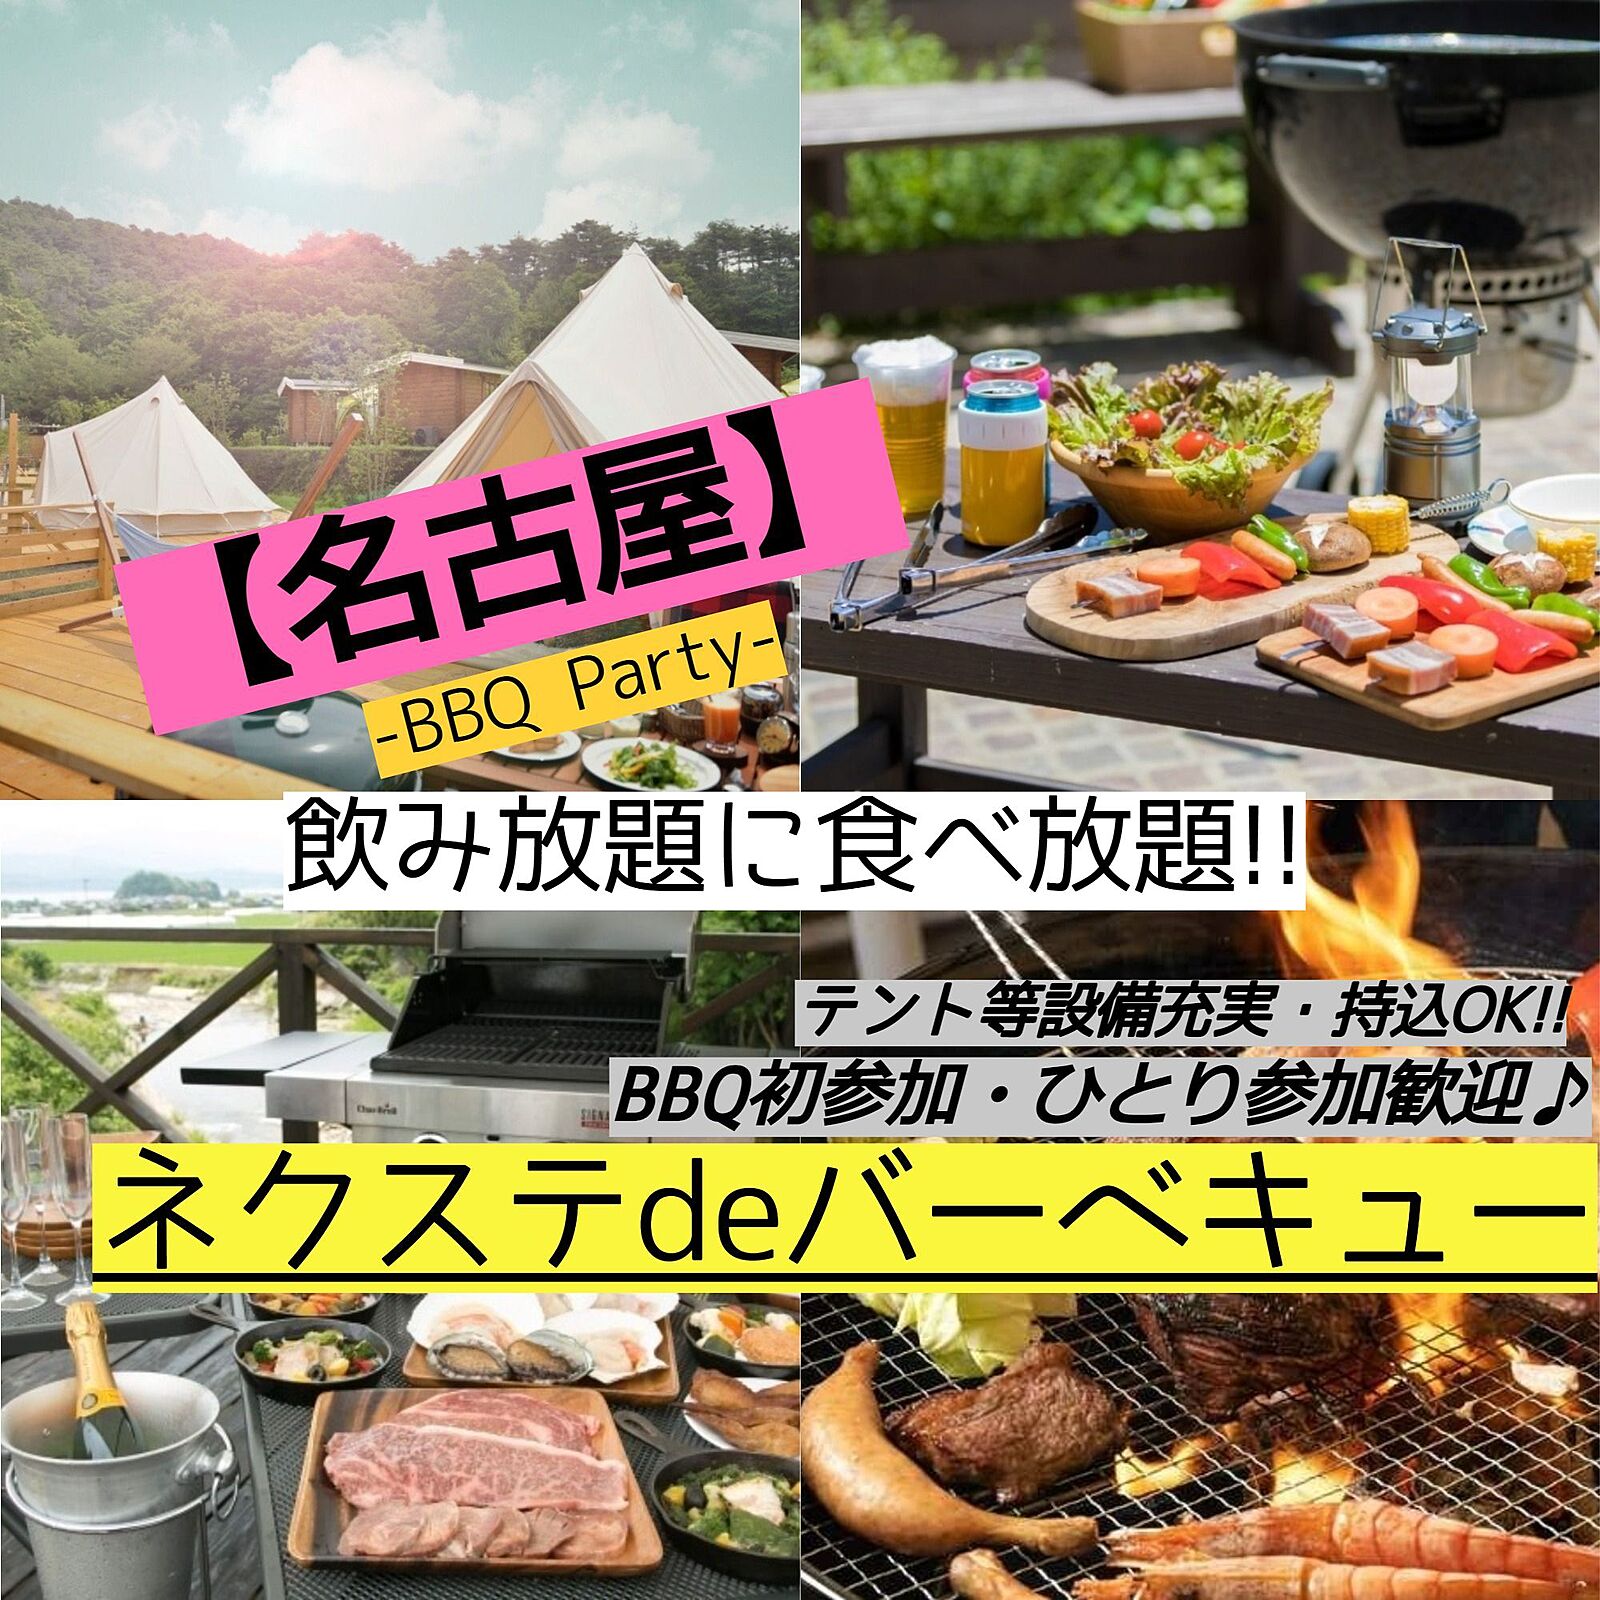 9月24日(日曜)【毎月2回開催・名古屋市内・BBQ】飲み・食べ放題!!素敵に本格的なBBQ♪【ネクステdeバーベキュー会】